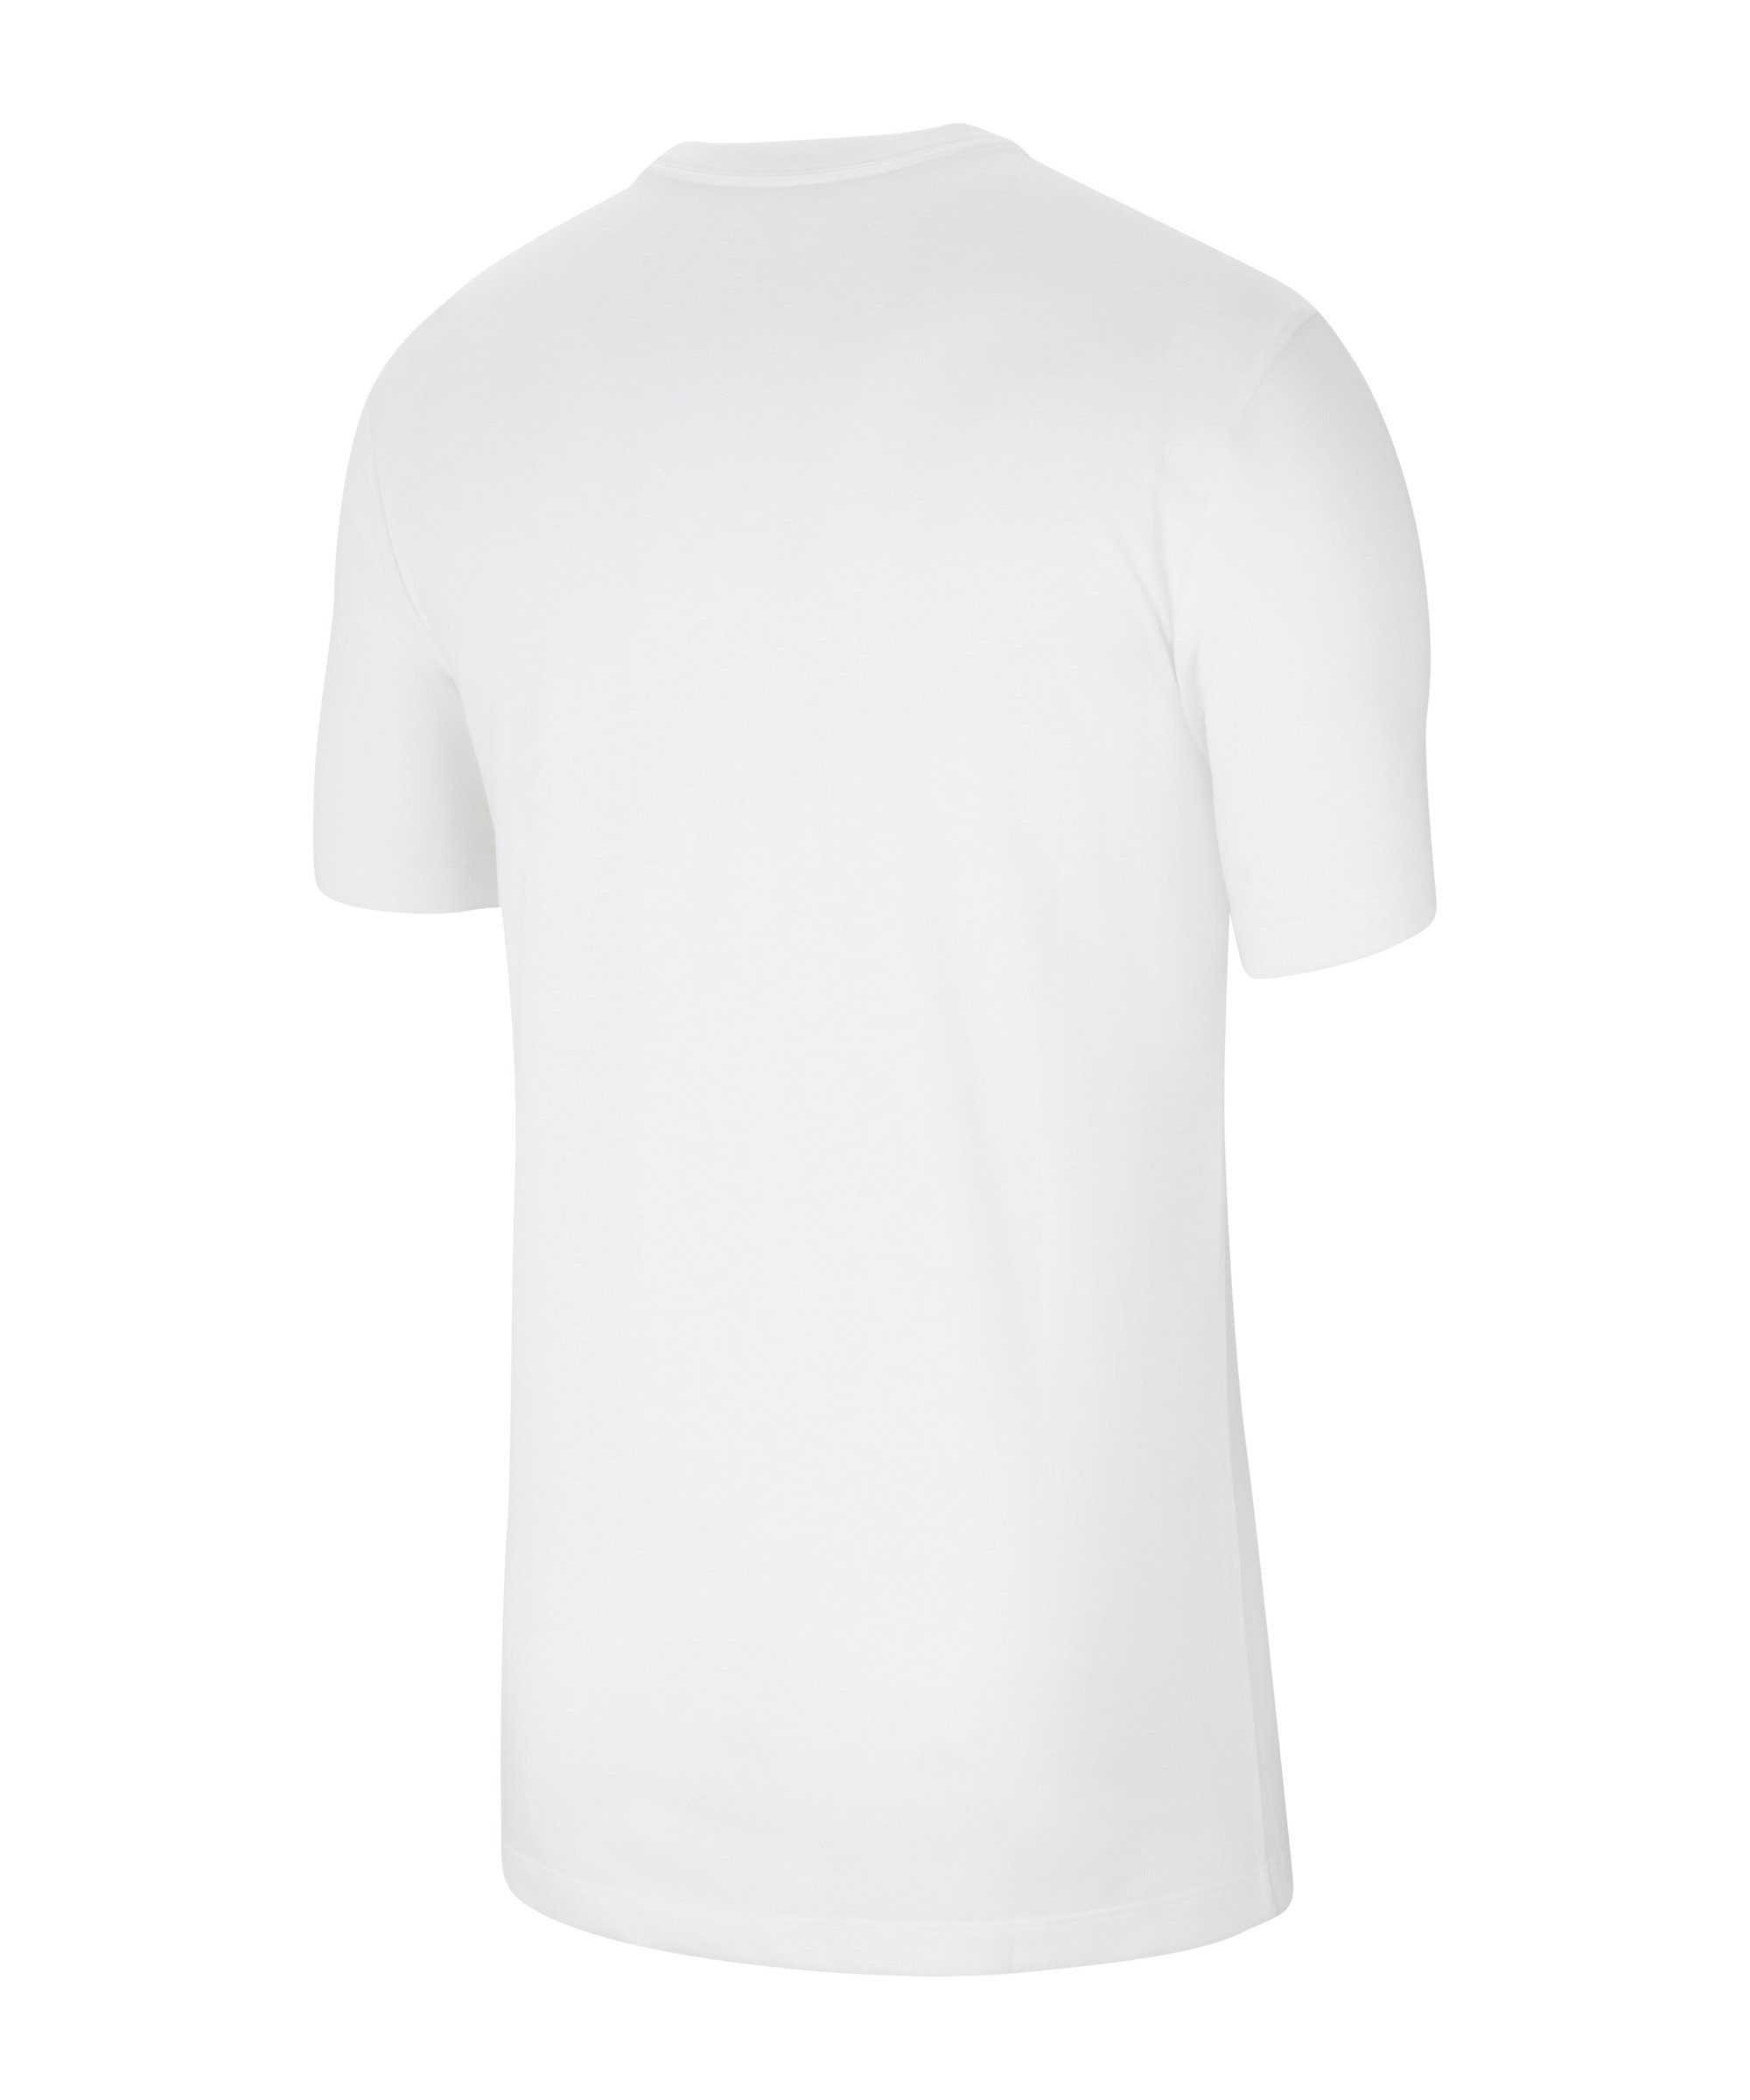 T-Shirt Nike Park default 20 Swoosh T-Shirt weissschwarz